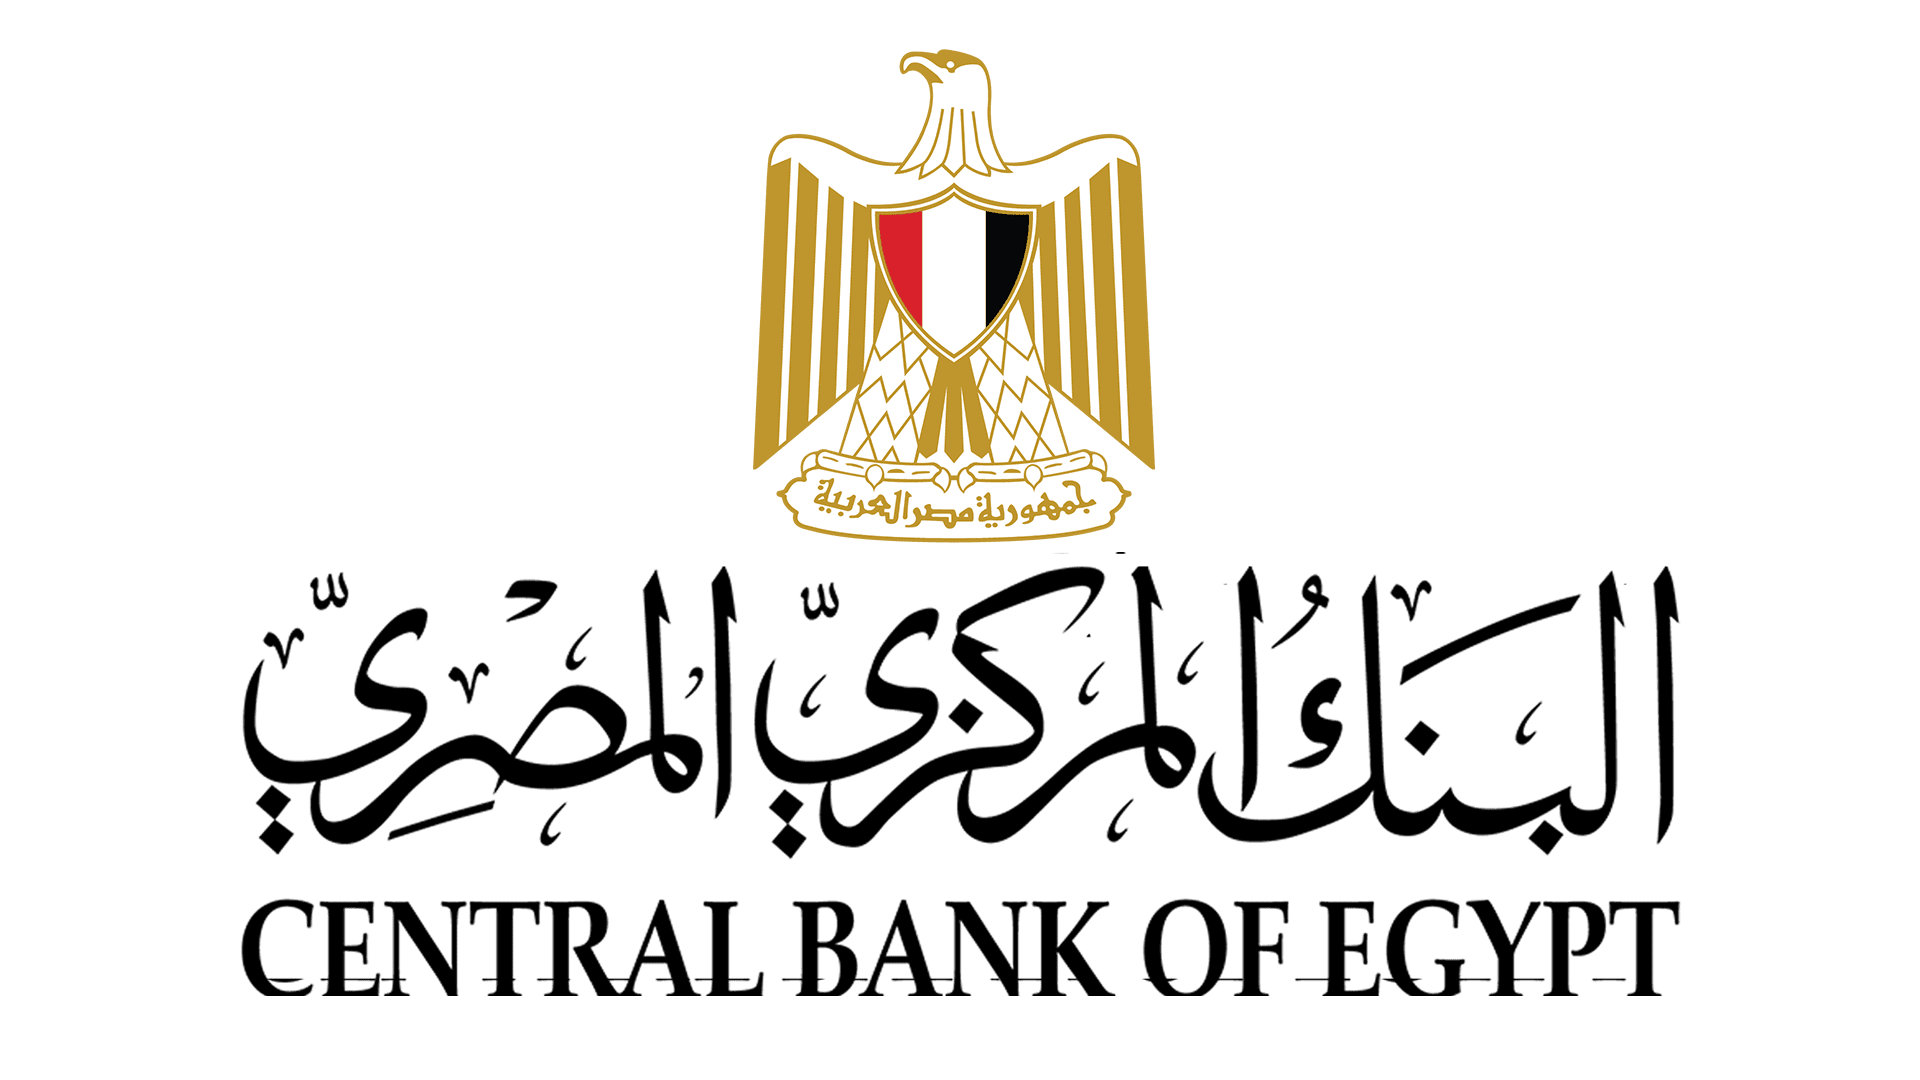  البنك المركزي المصري يرفع أسعار الفائدة الرئيسية بنسبة 3٪ ويتجاوز التوقعات